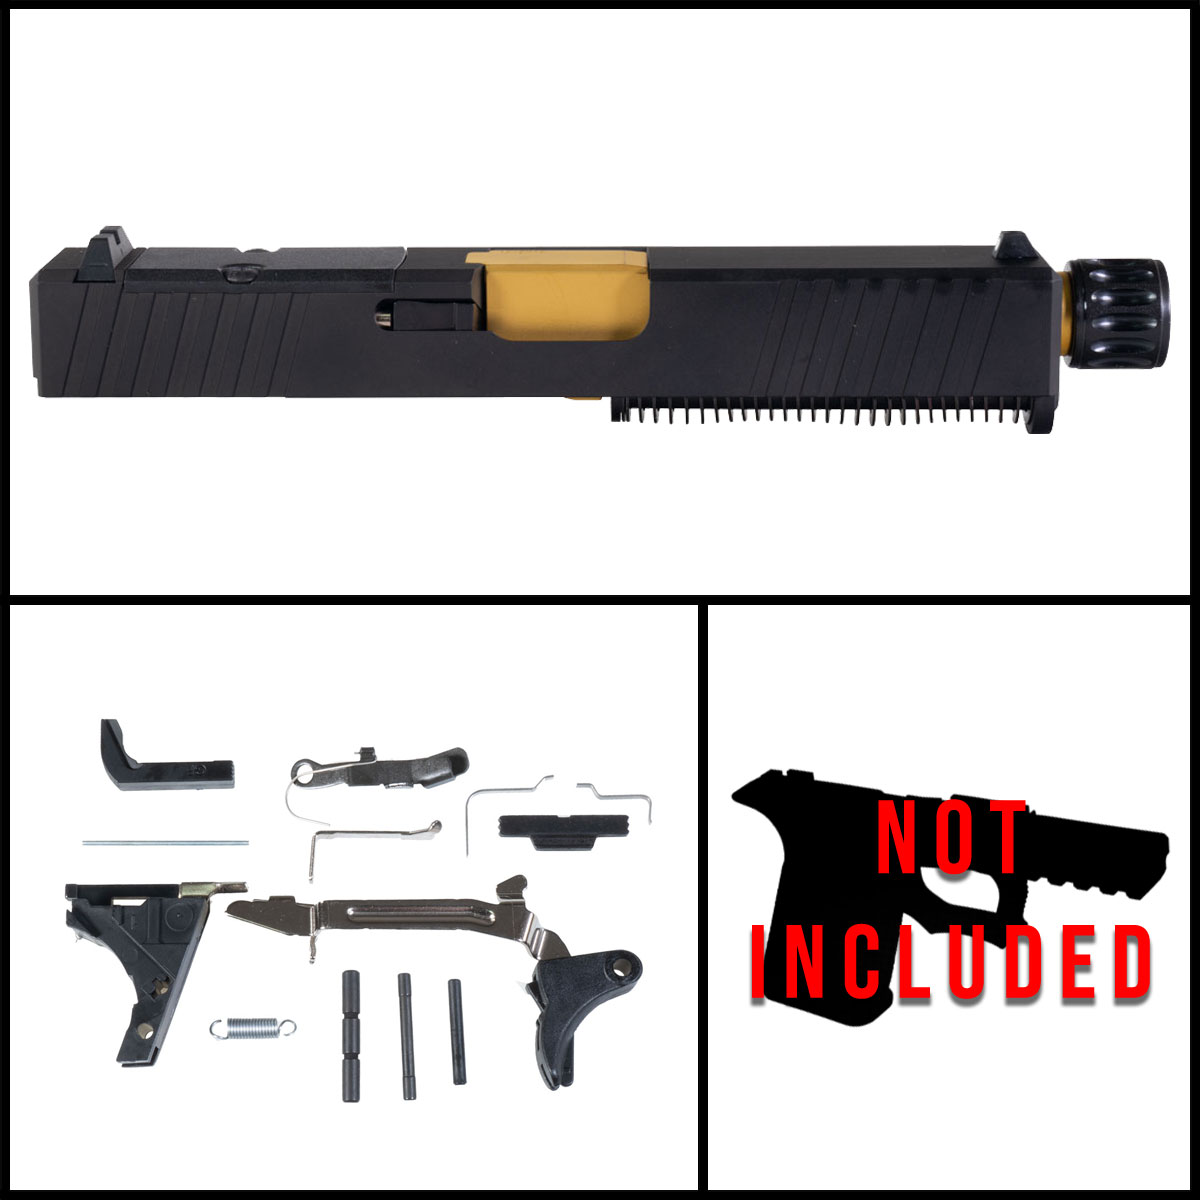 DTT 'Bloei' 9mm Full Pistol Build Kit (Everything Minus Frame) - Glock 19 Gen 1-3 Compatible